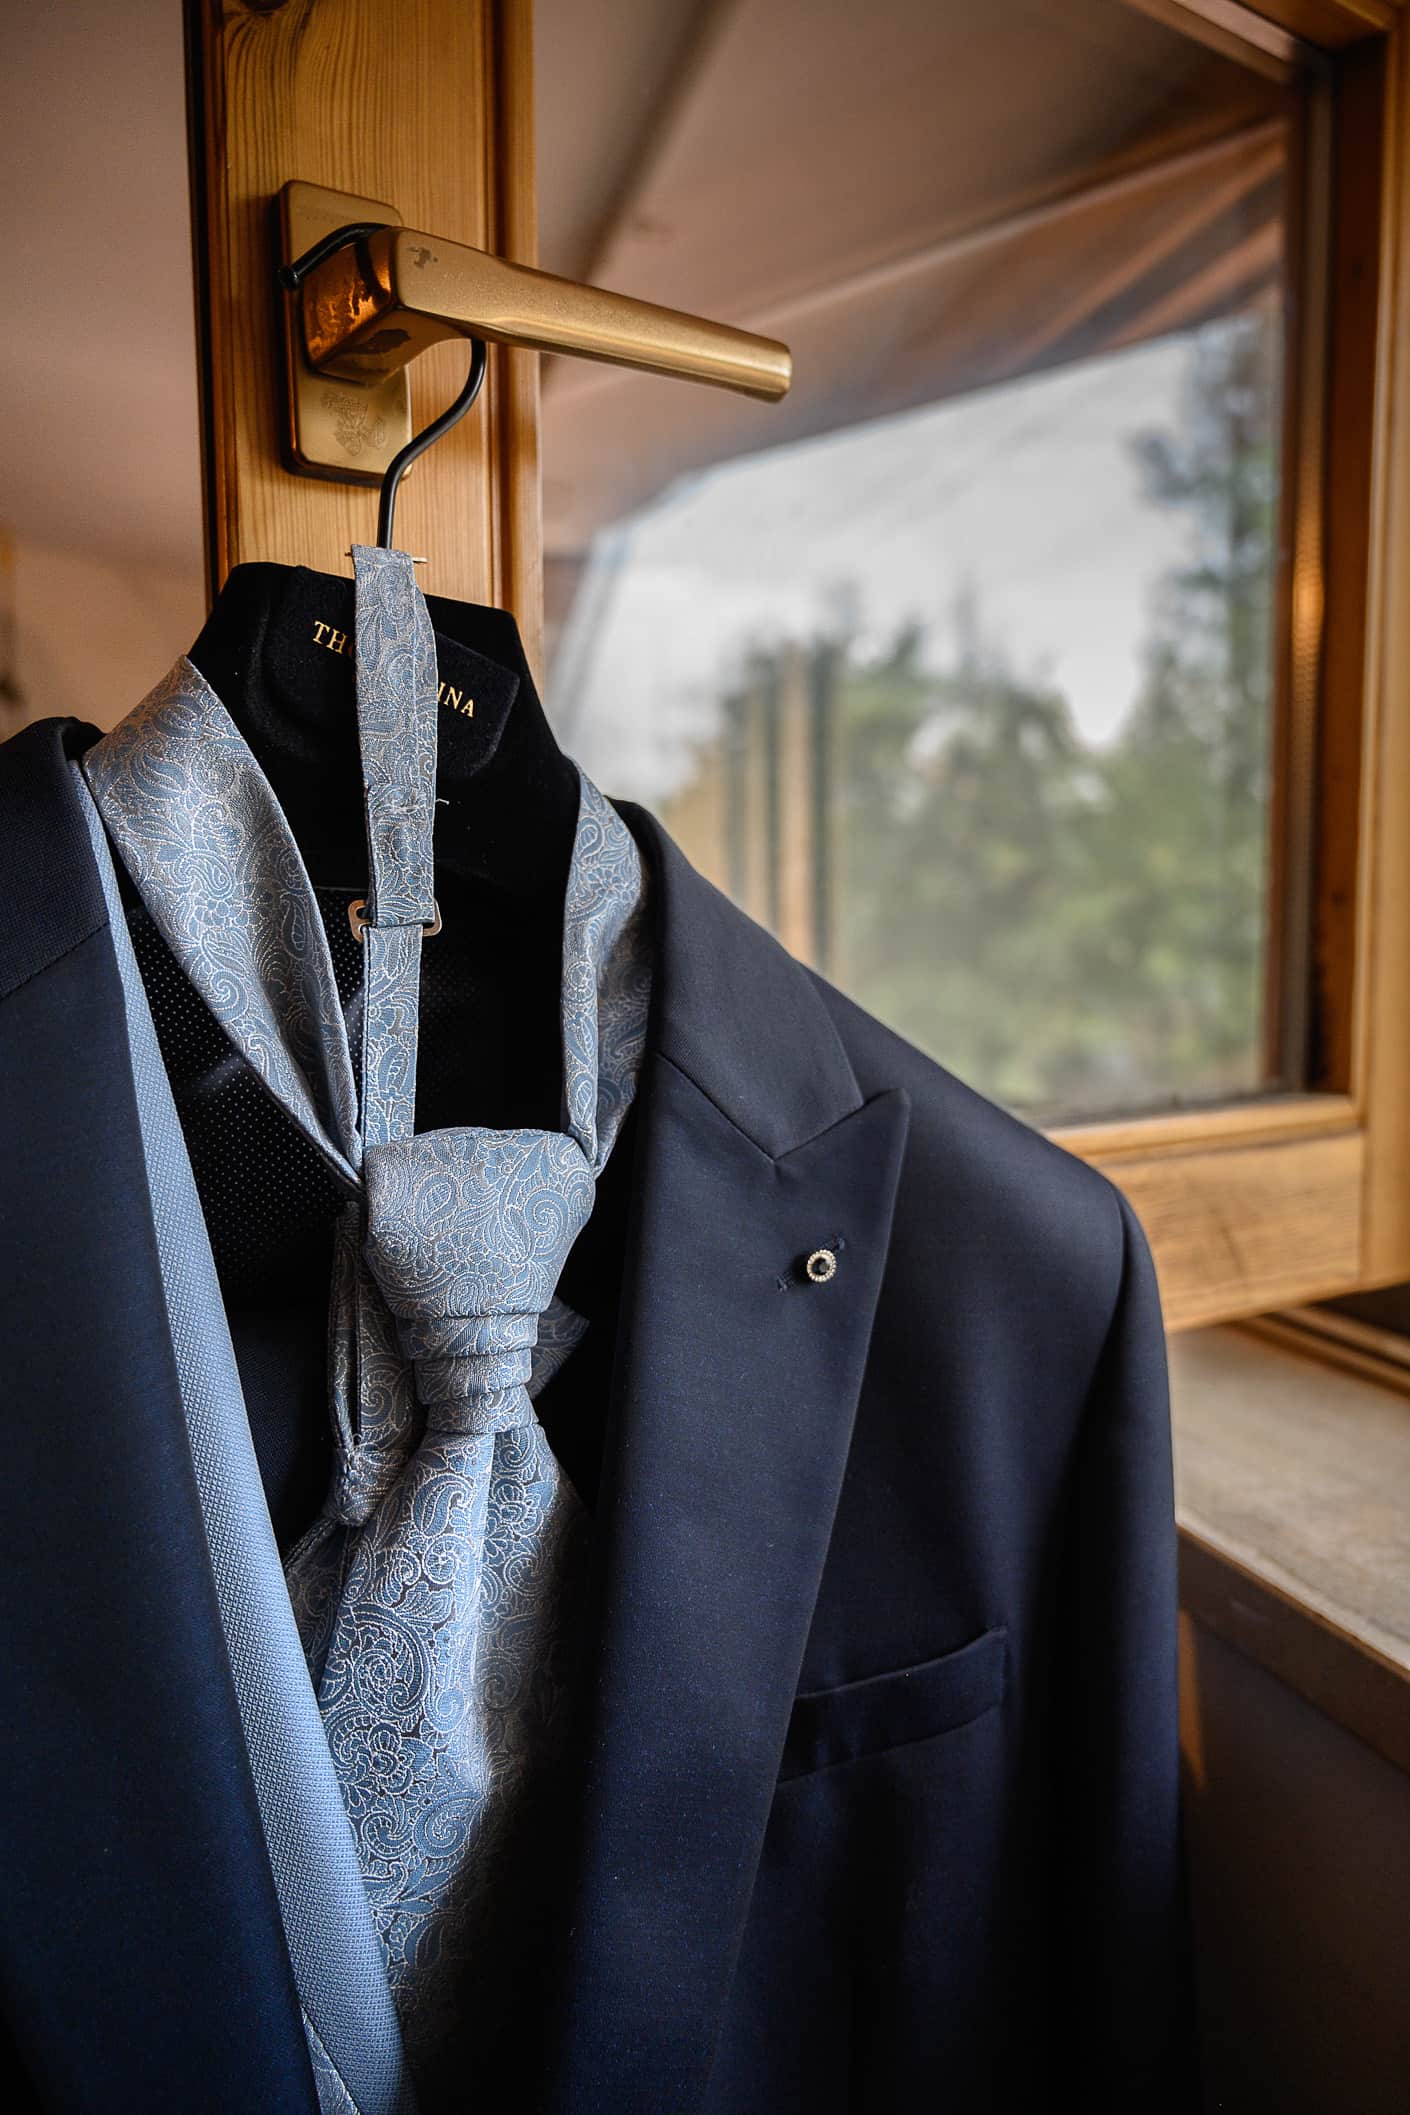 giacca e cravatta dello sposo appesi alla finestra della cameretta